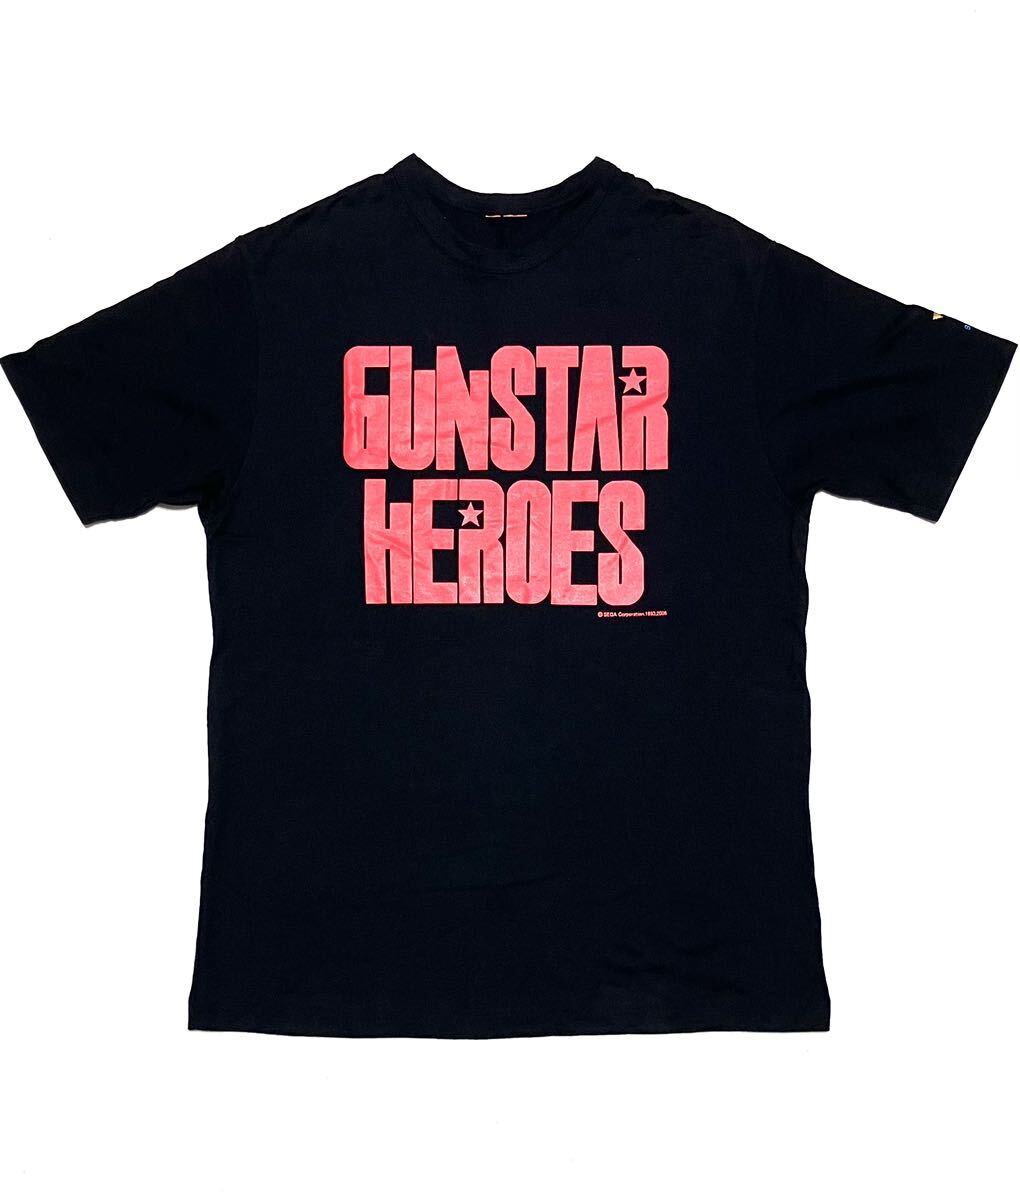 送料無料 SEGA GUNSTAR HEROES デカロゴ Tシャツ 両面デザイン コピーライト有り